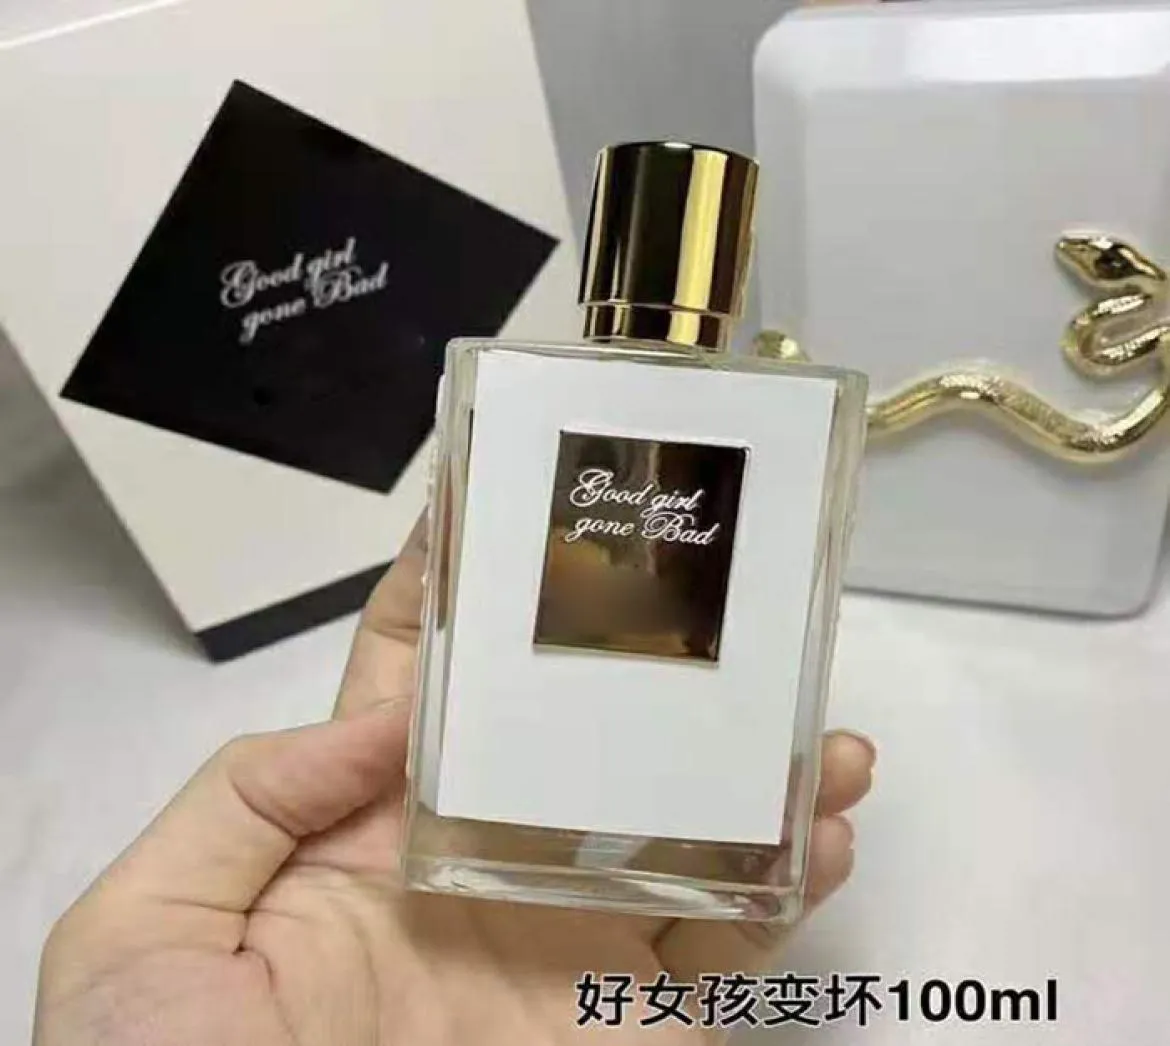 Profumo di fascia alta per uomo e donna Confezione regalo squisita da 100 ml con una ricca fragranza che dura 7267598 0NMW